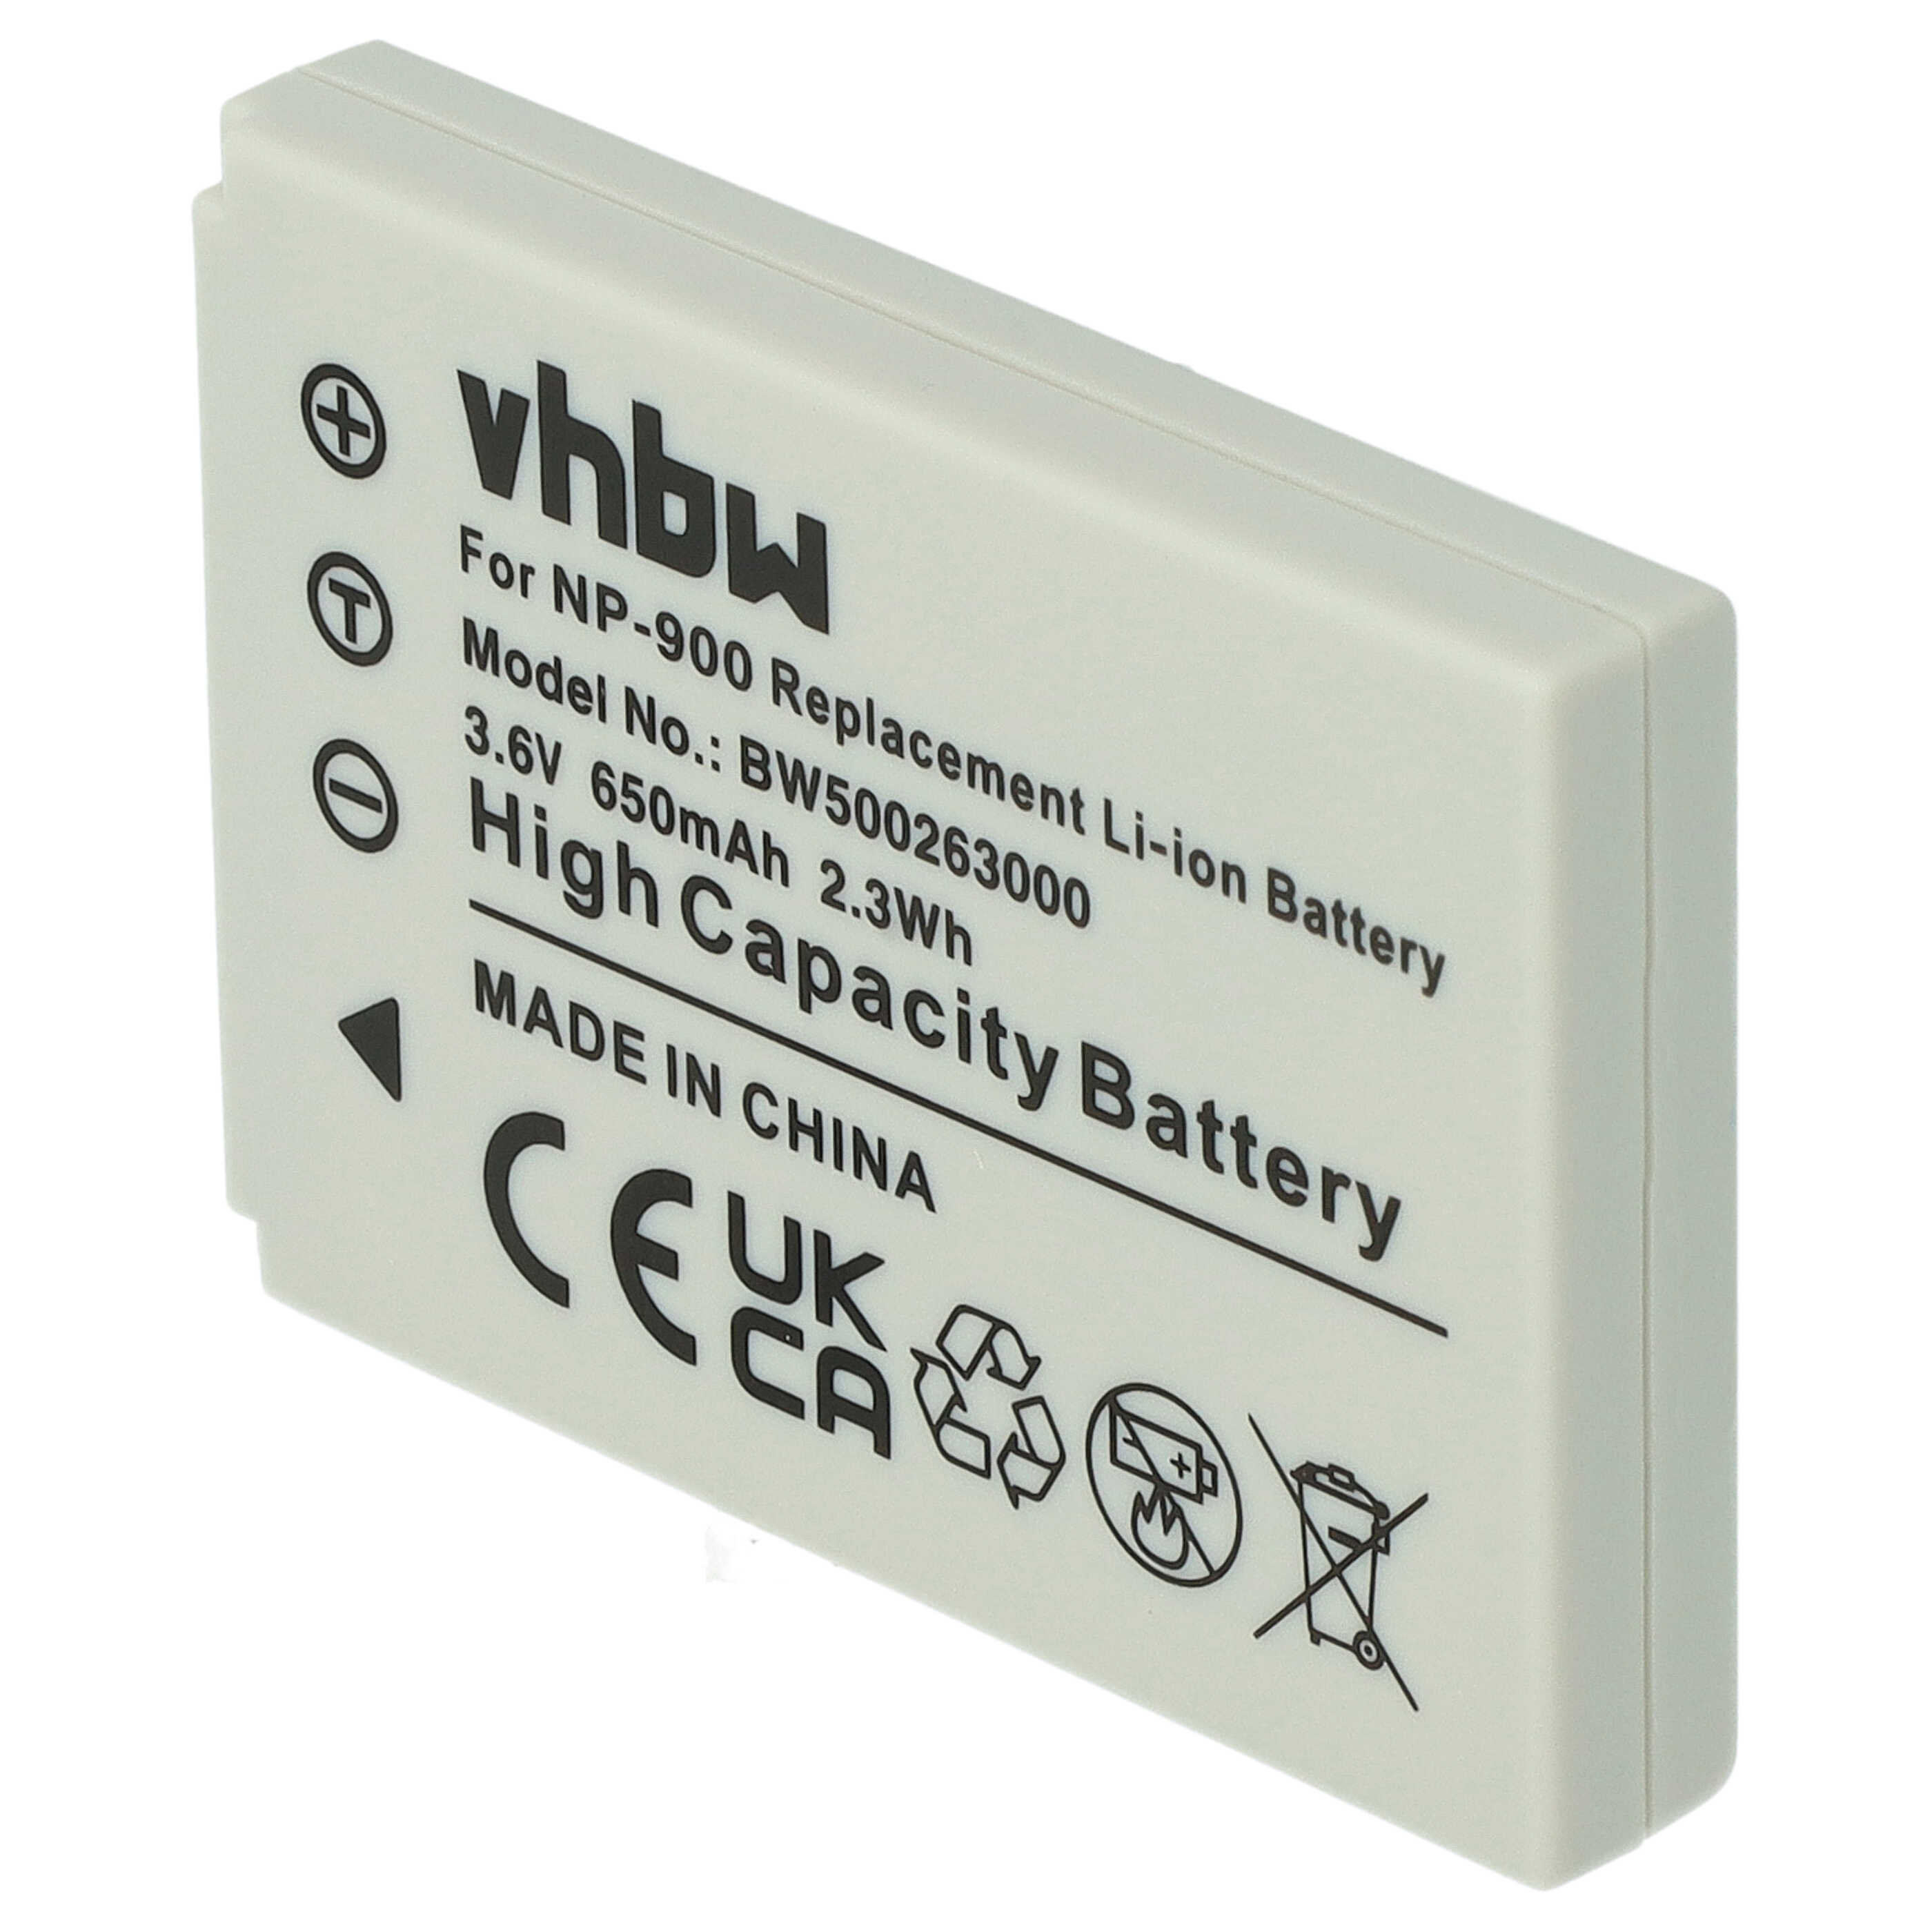 Batterie remplace Avant BATS4 pour appareil photo - 650mAh 3,6V Li-ion